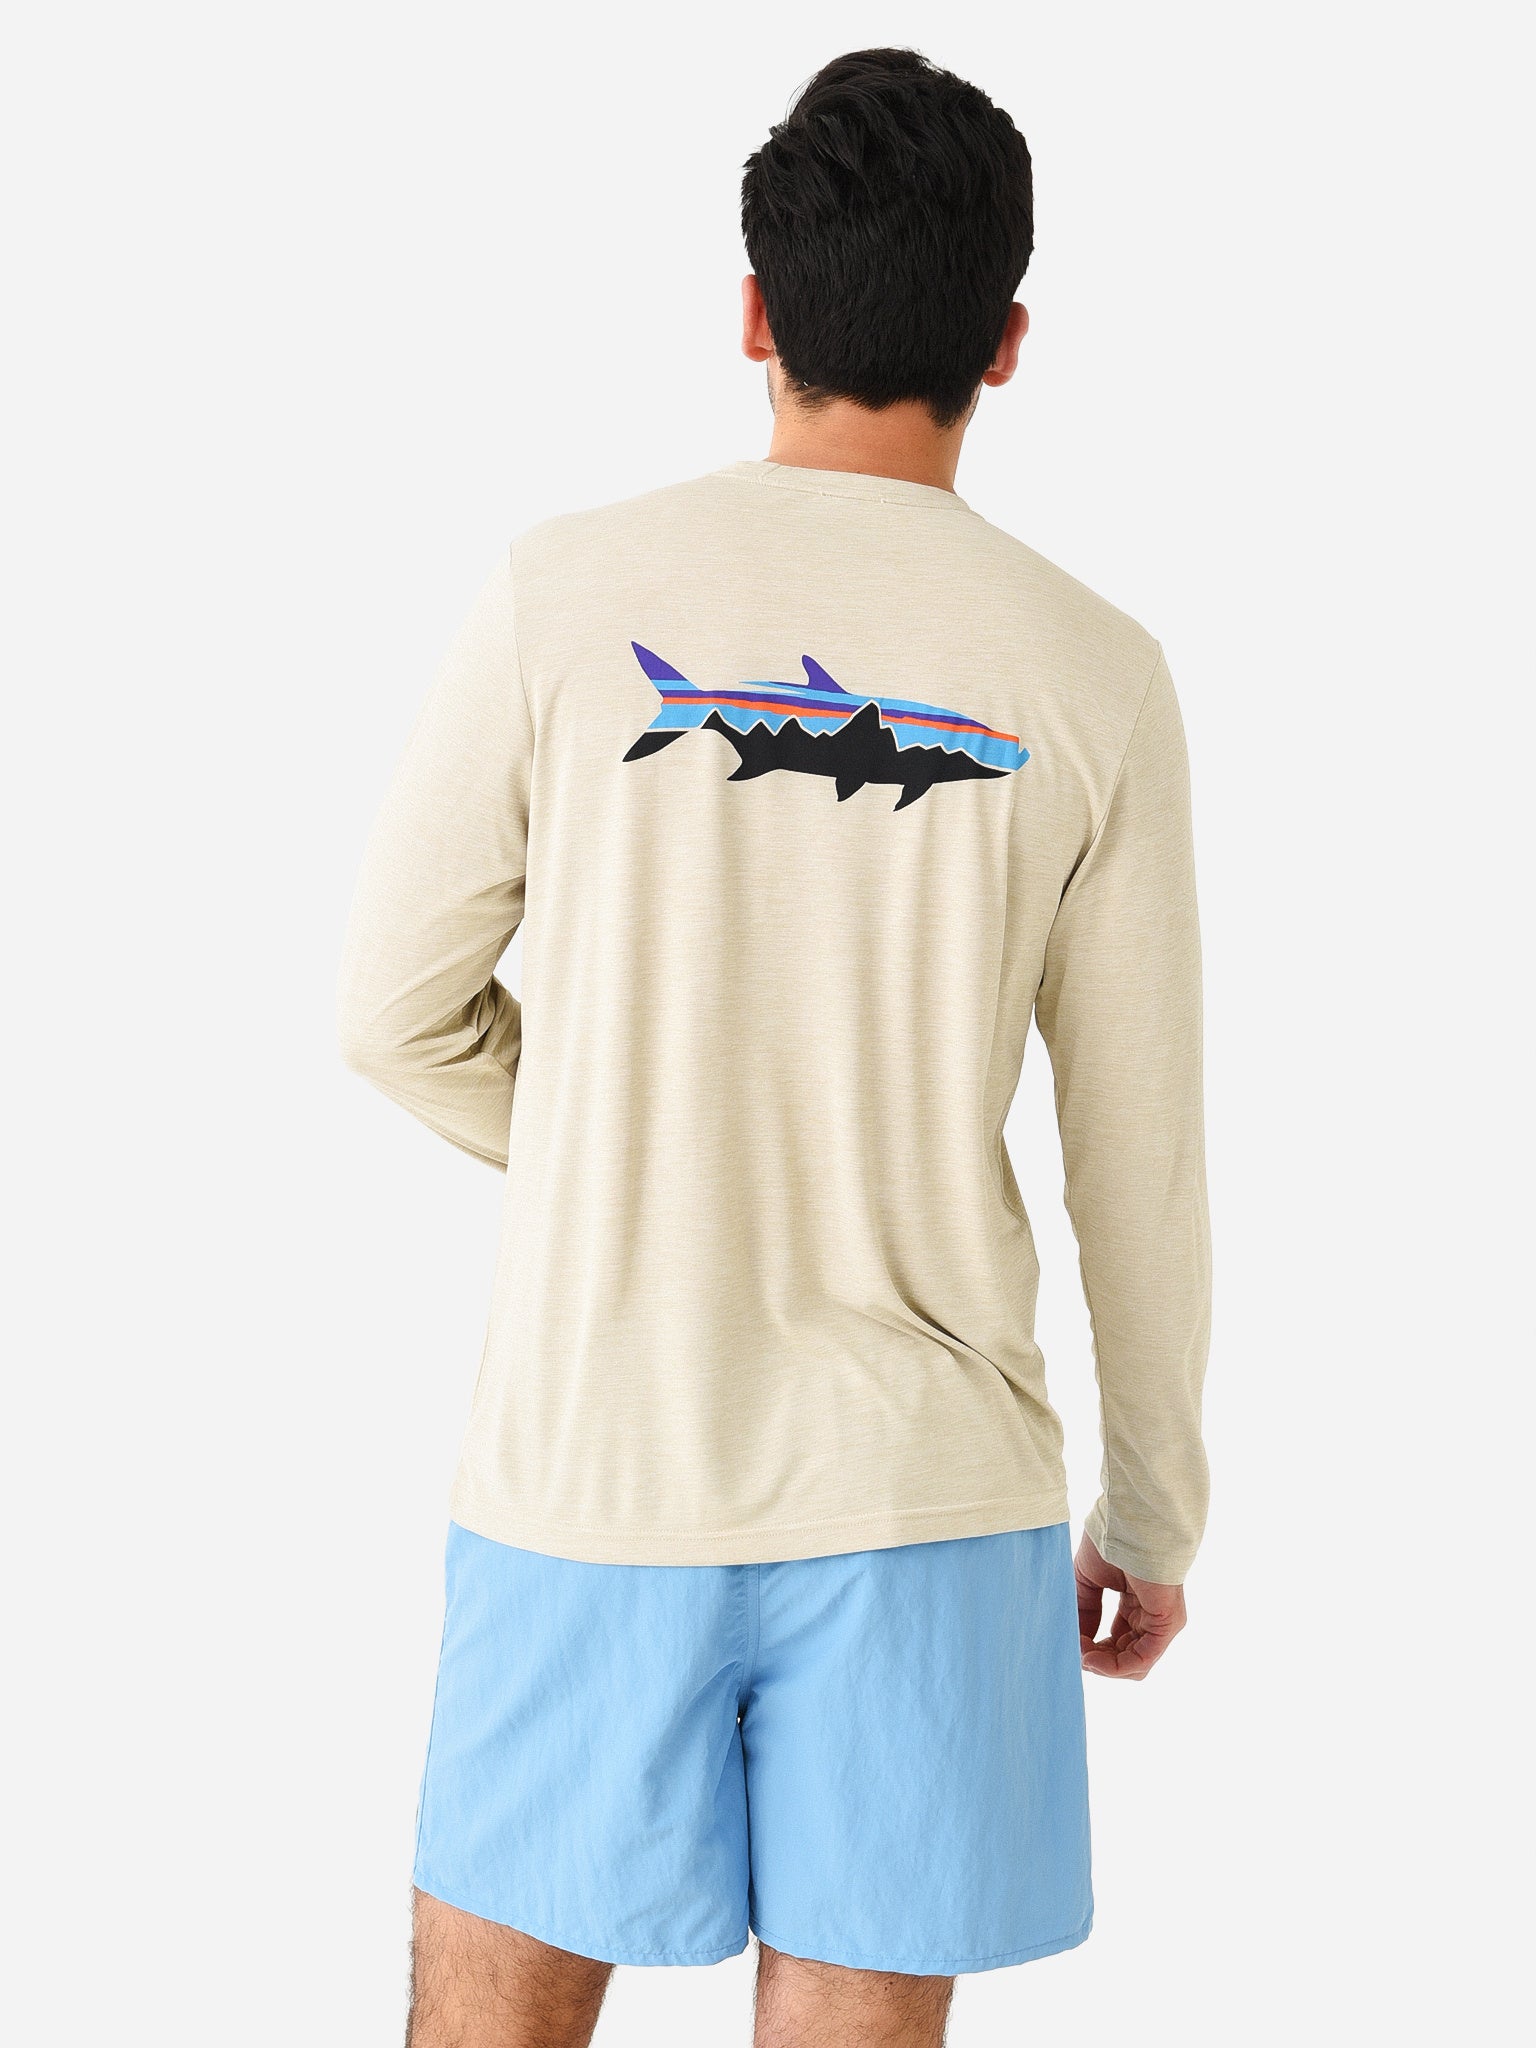 PATAGONIA Mens Long Sleeve Cap Cool Daily Fish Graphic Shirt